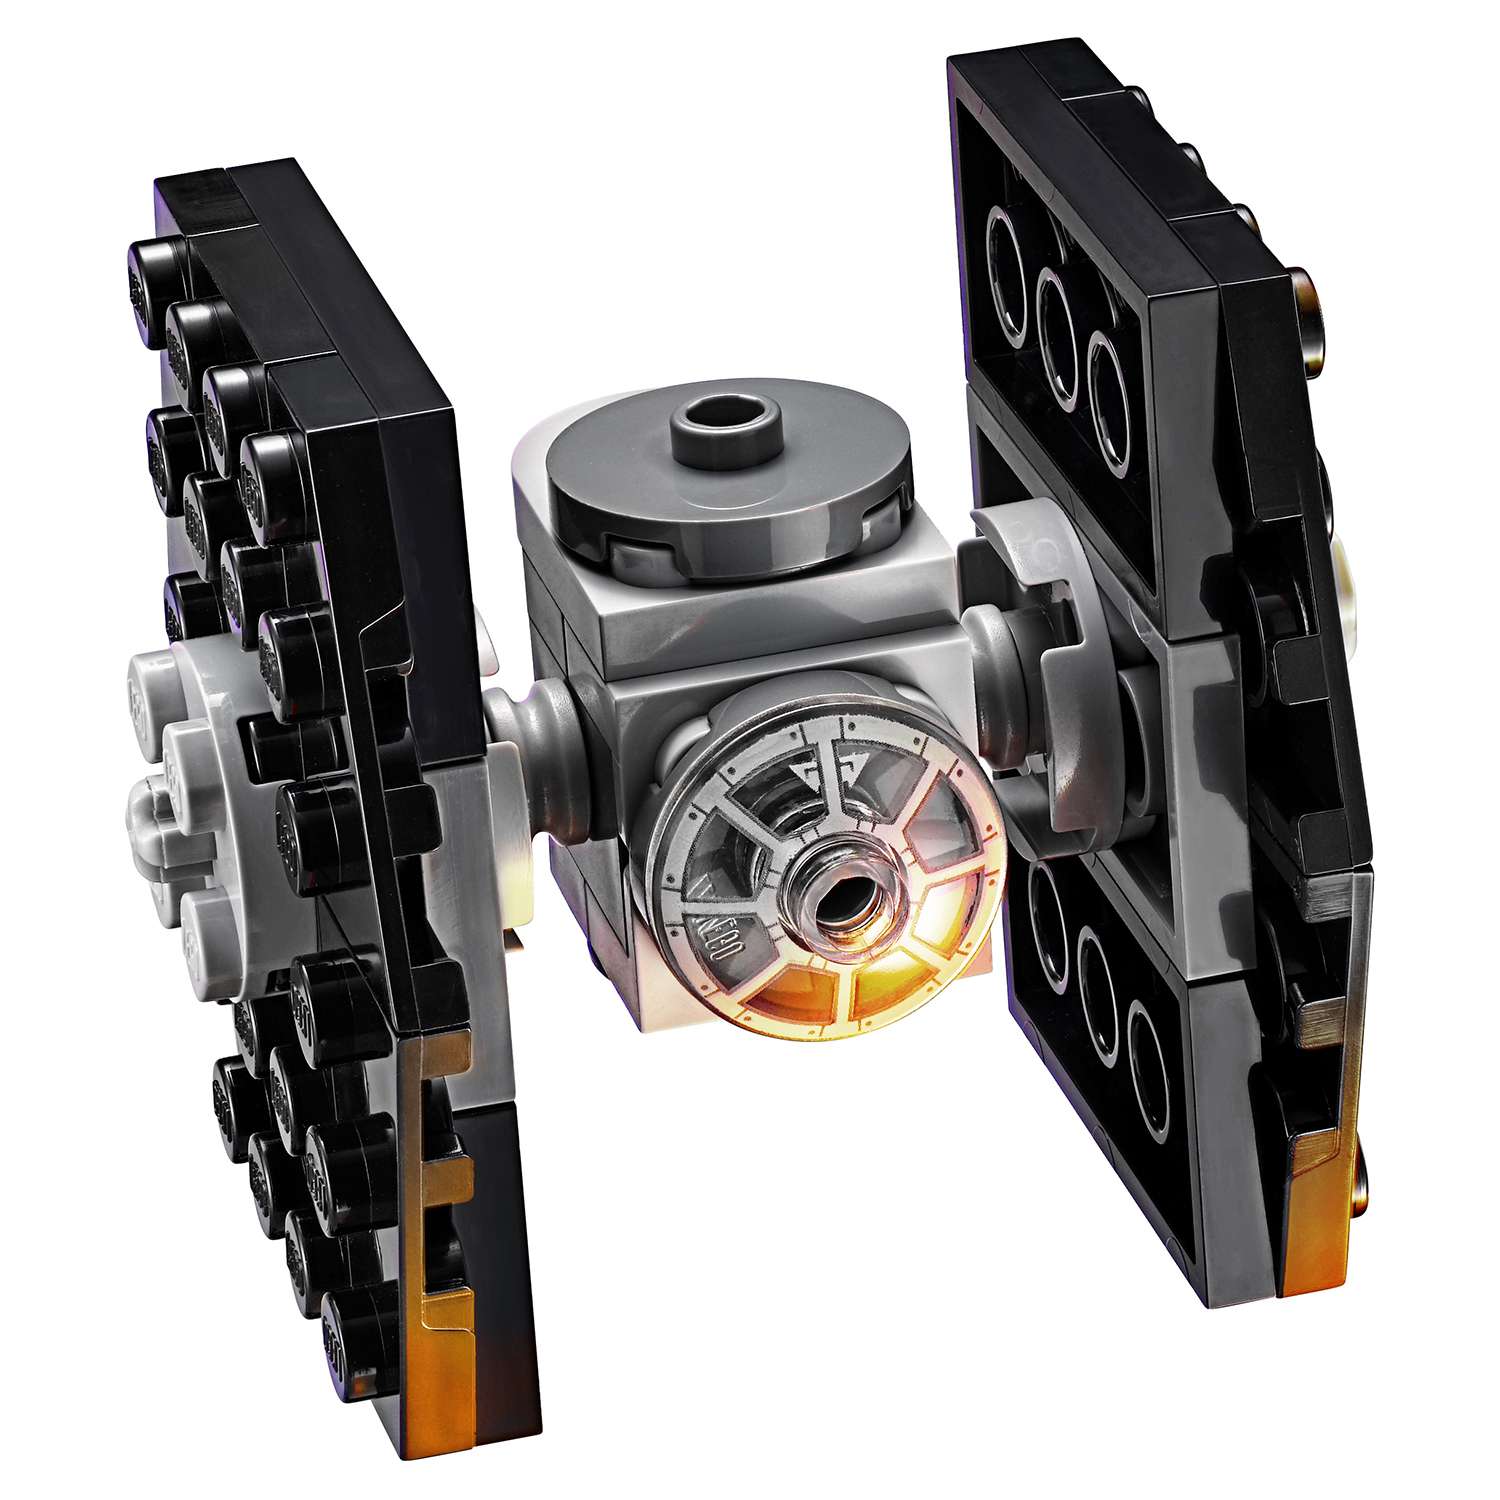 Конструктор LEGO Star Wars TM Имперский десантный корабль™ (Imperial Assault Carrier™) (75106) - фото 13